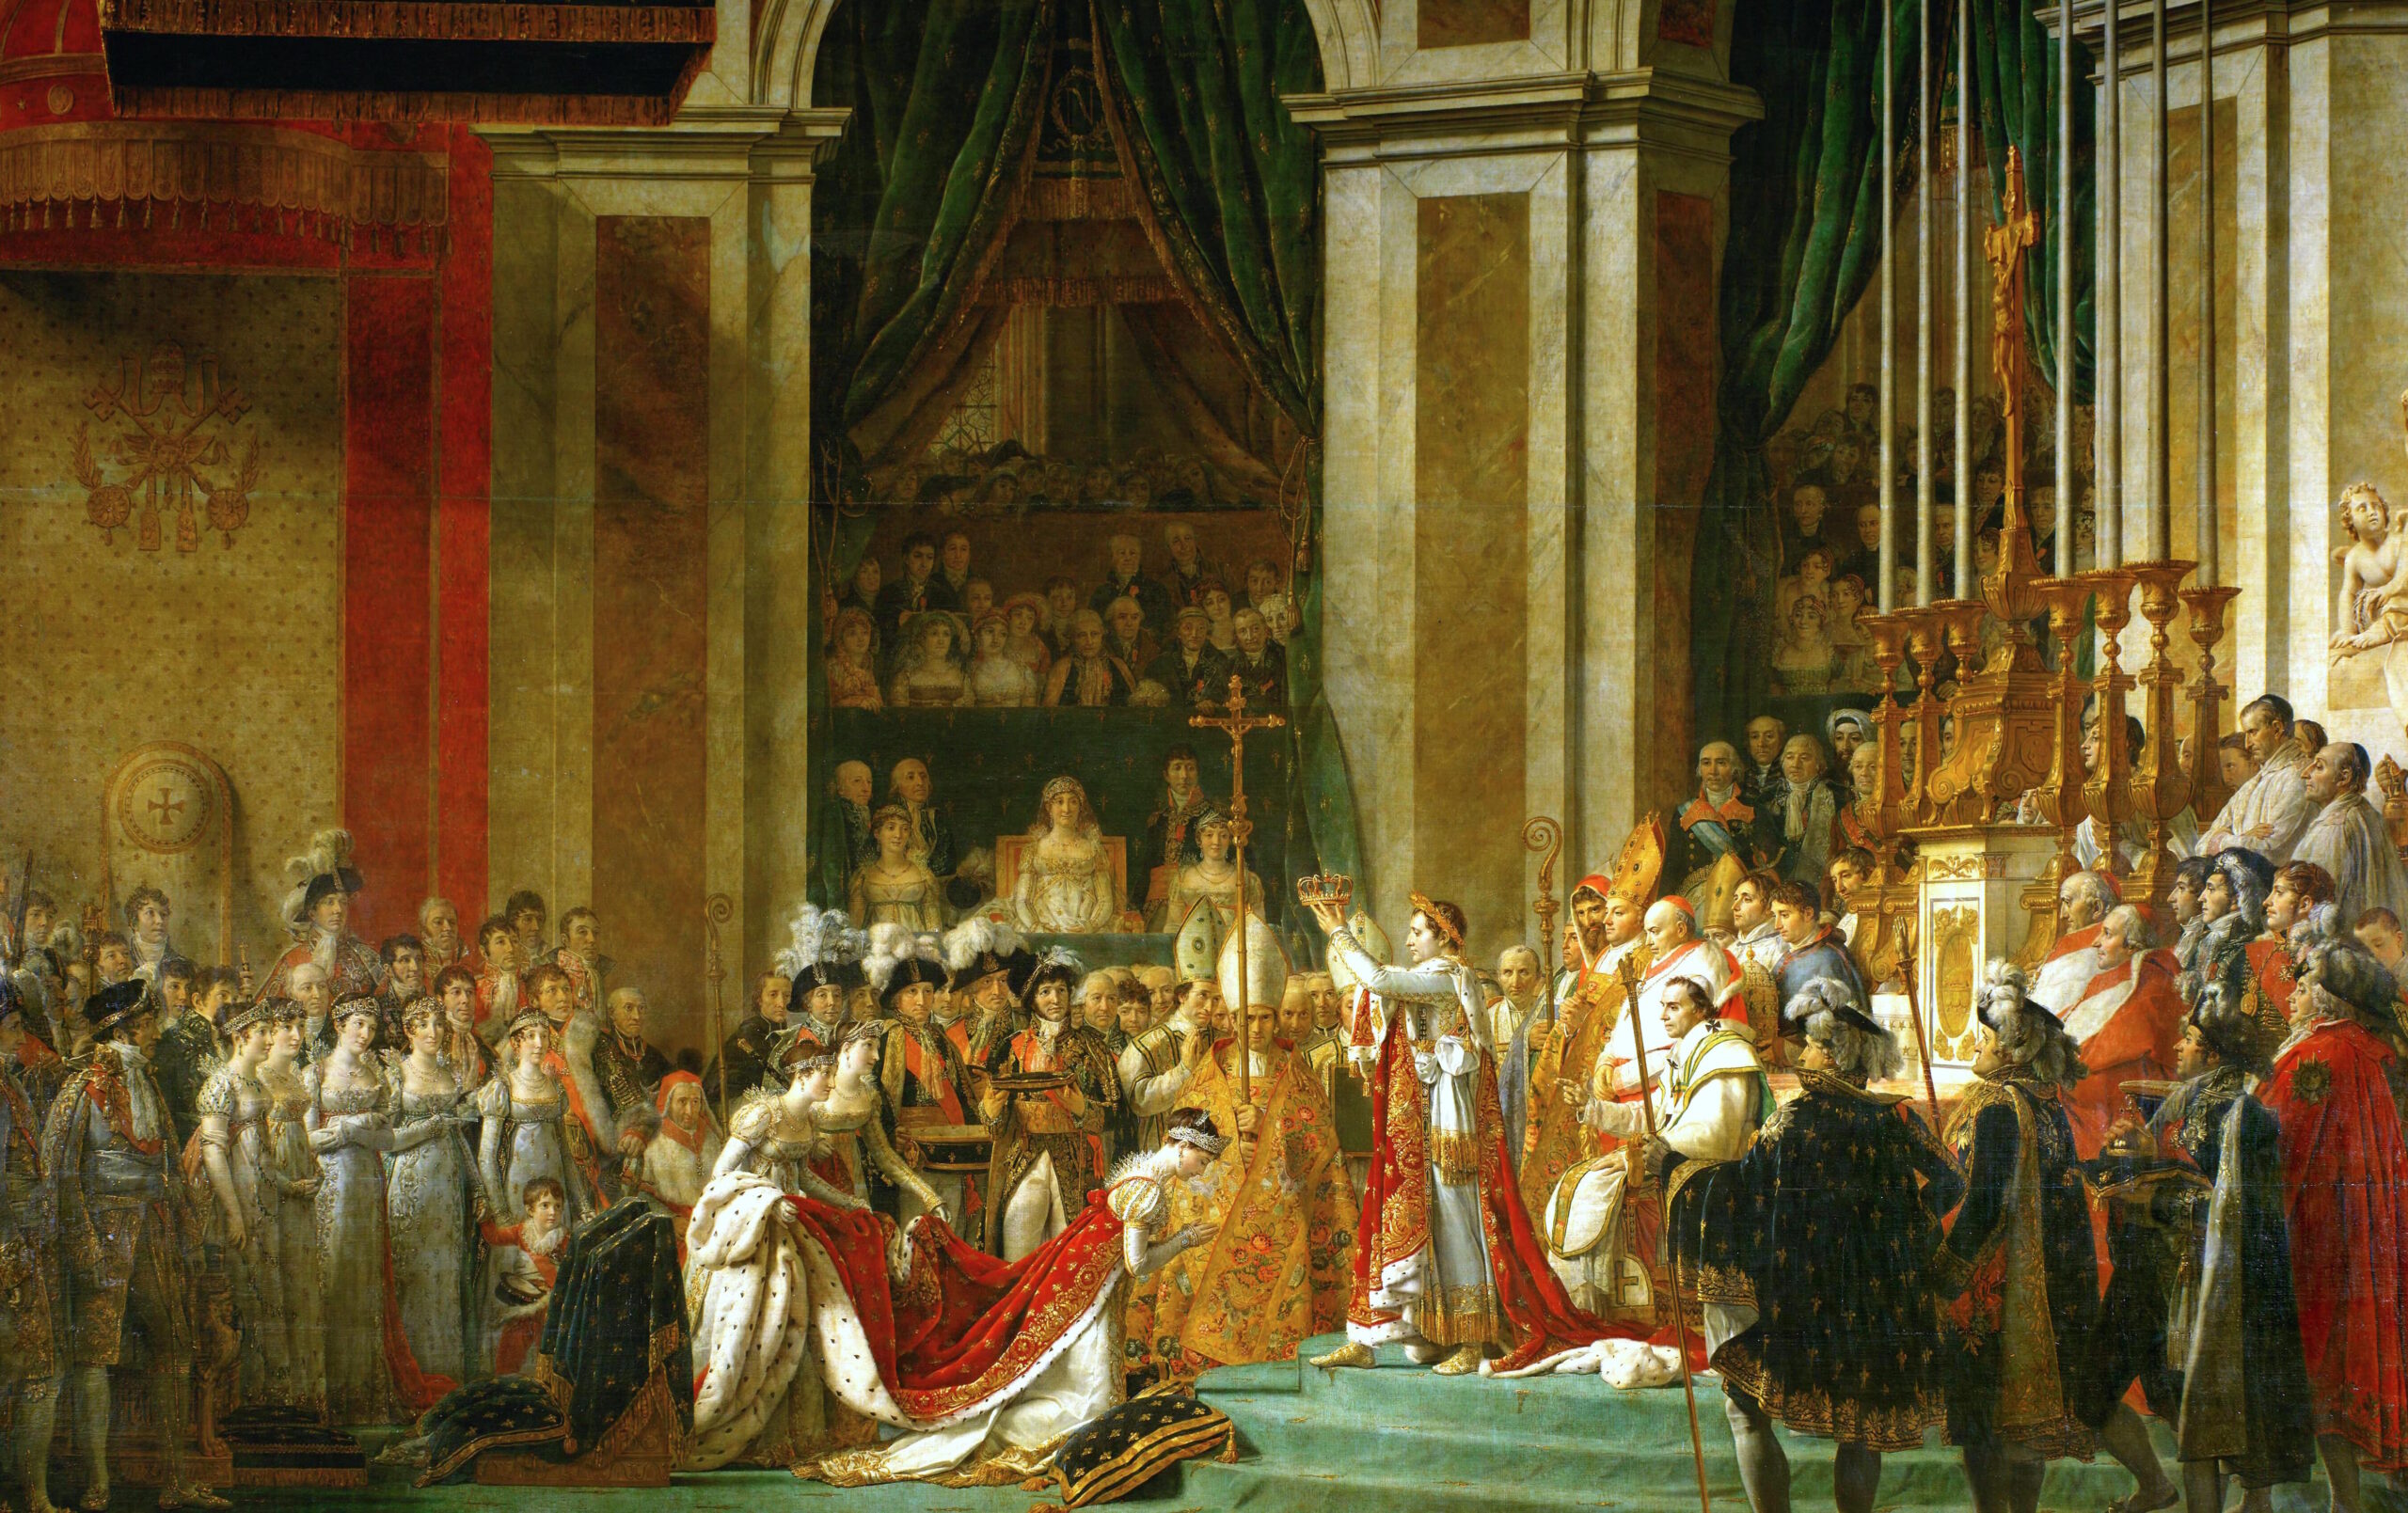 El cuadro de la coronación de Napoleón: una representación icónica de poder y legitimidad imperial